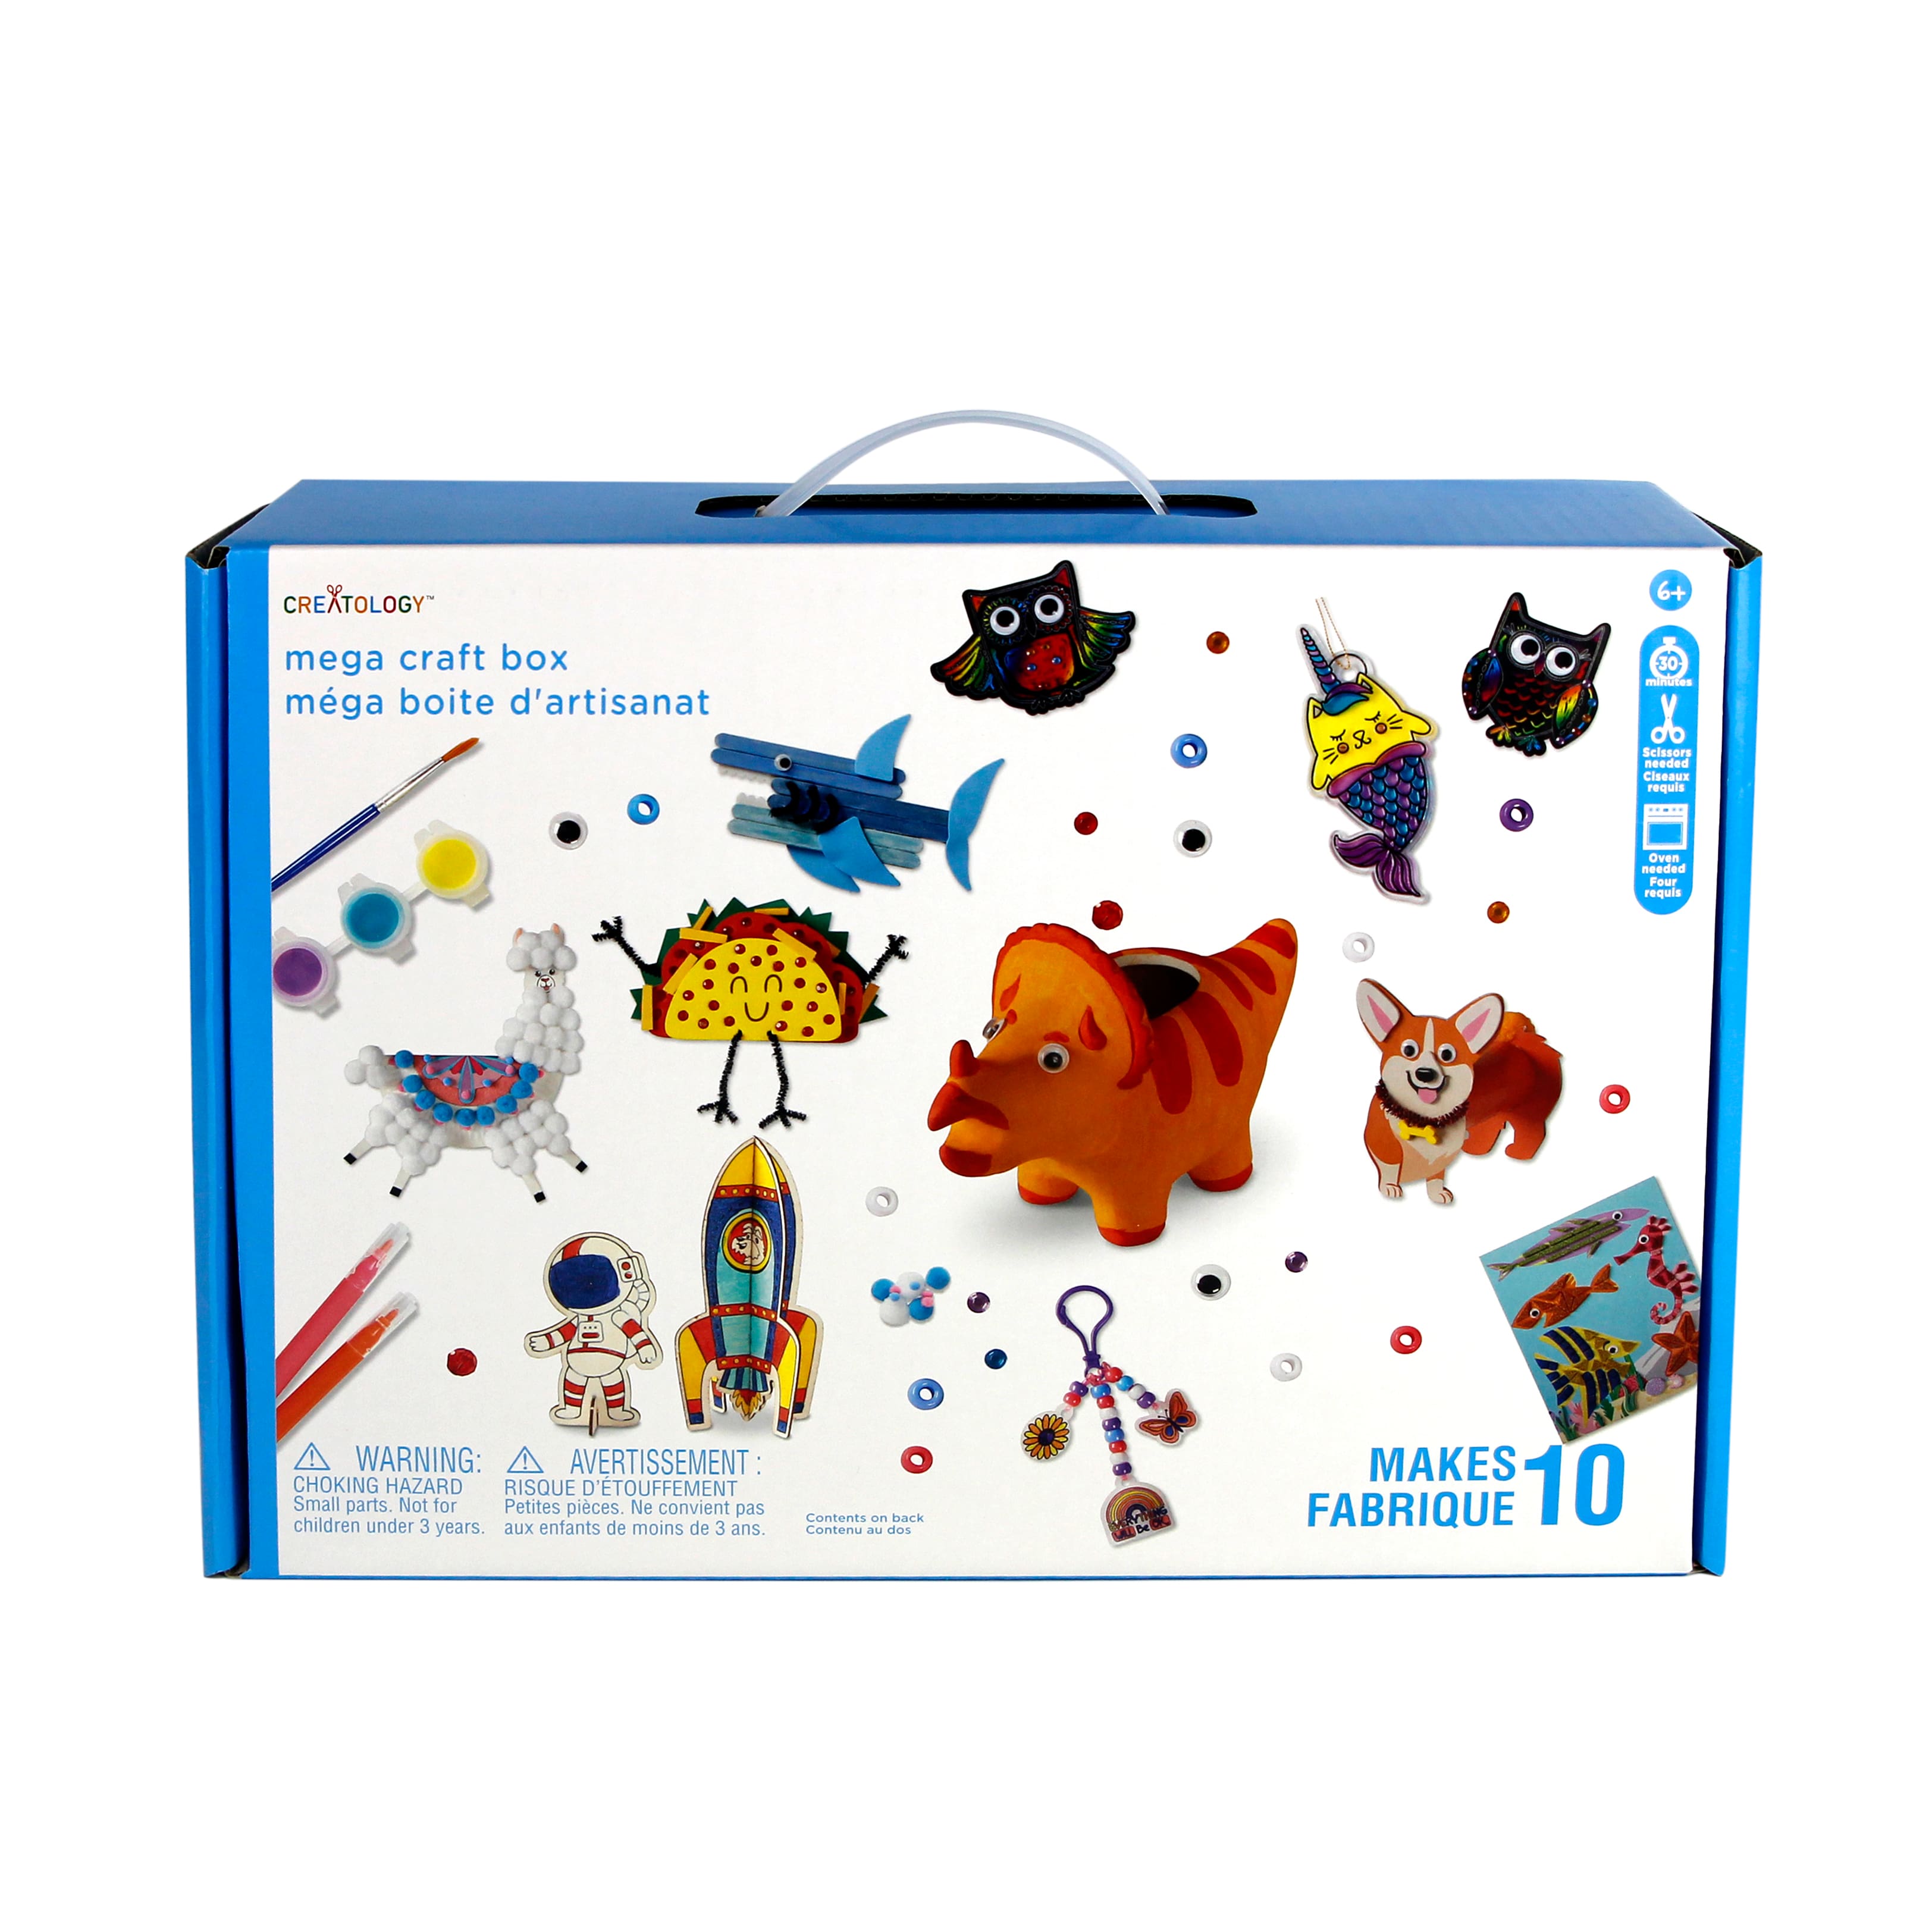 Rainbow Bead Kit Box by Creatology™